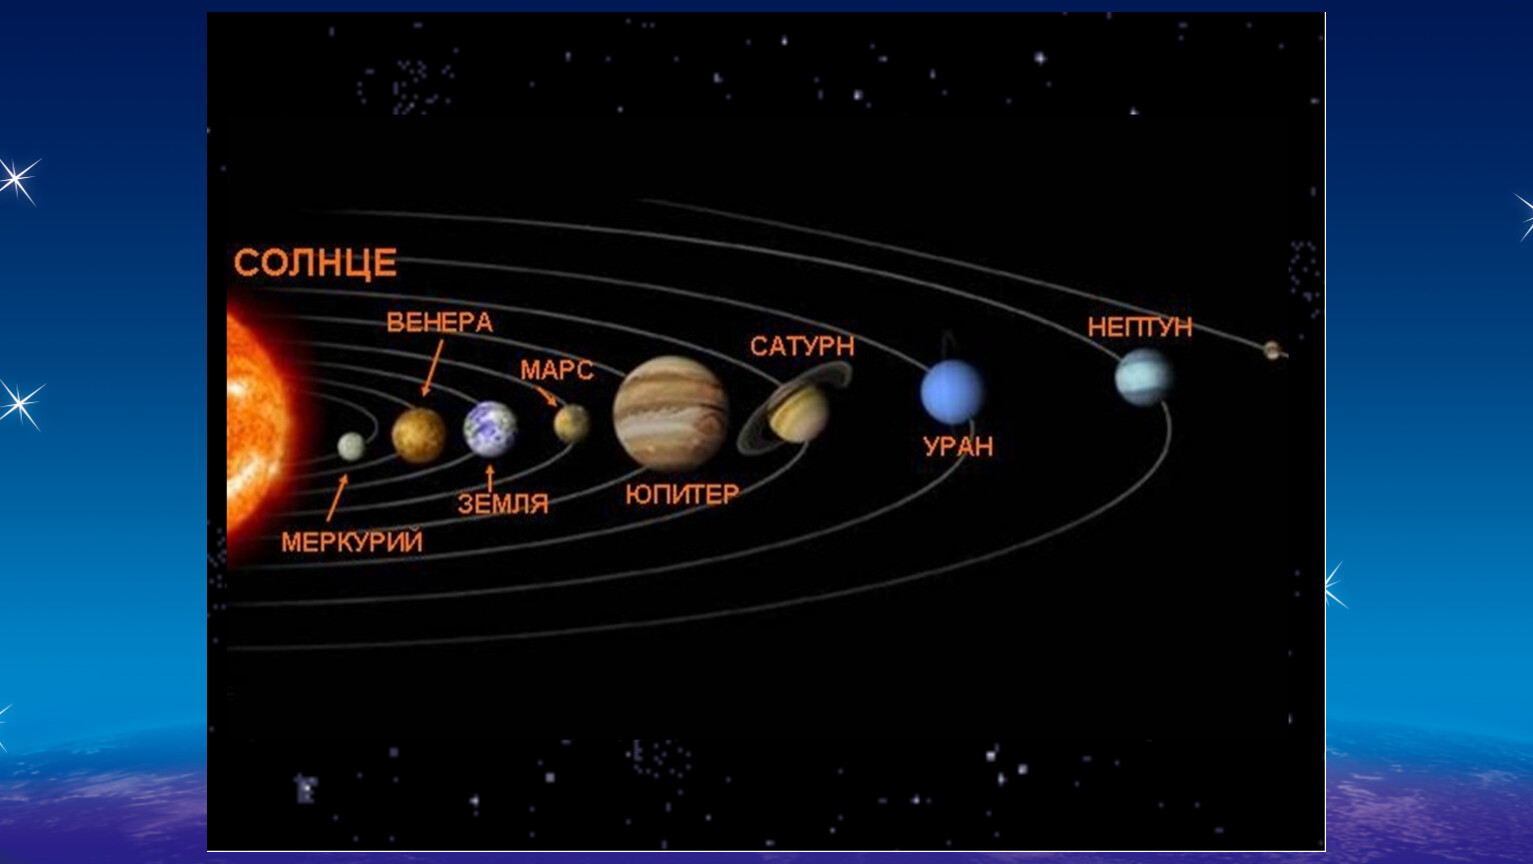 Схема расположения планет солнечной системы